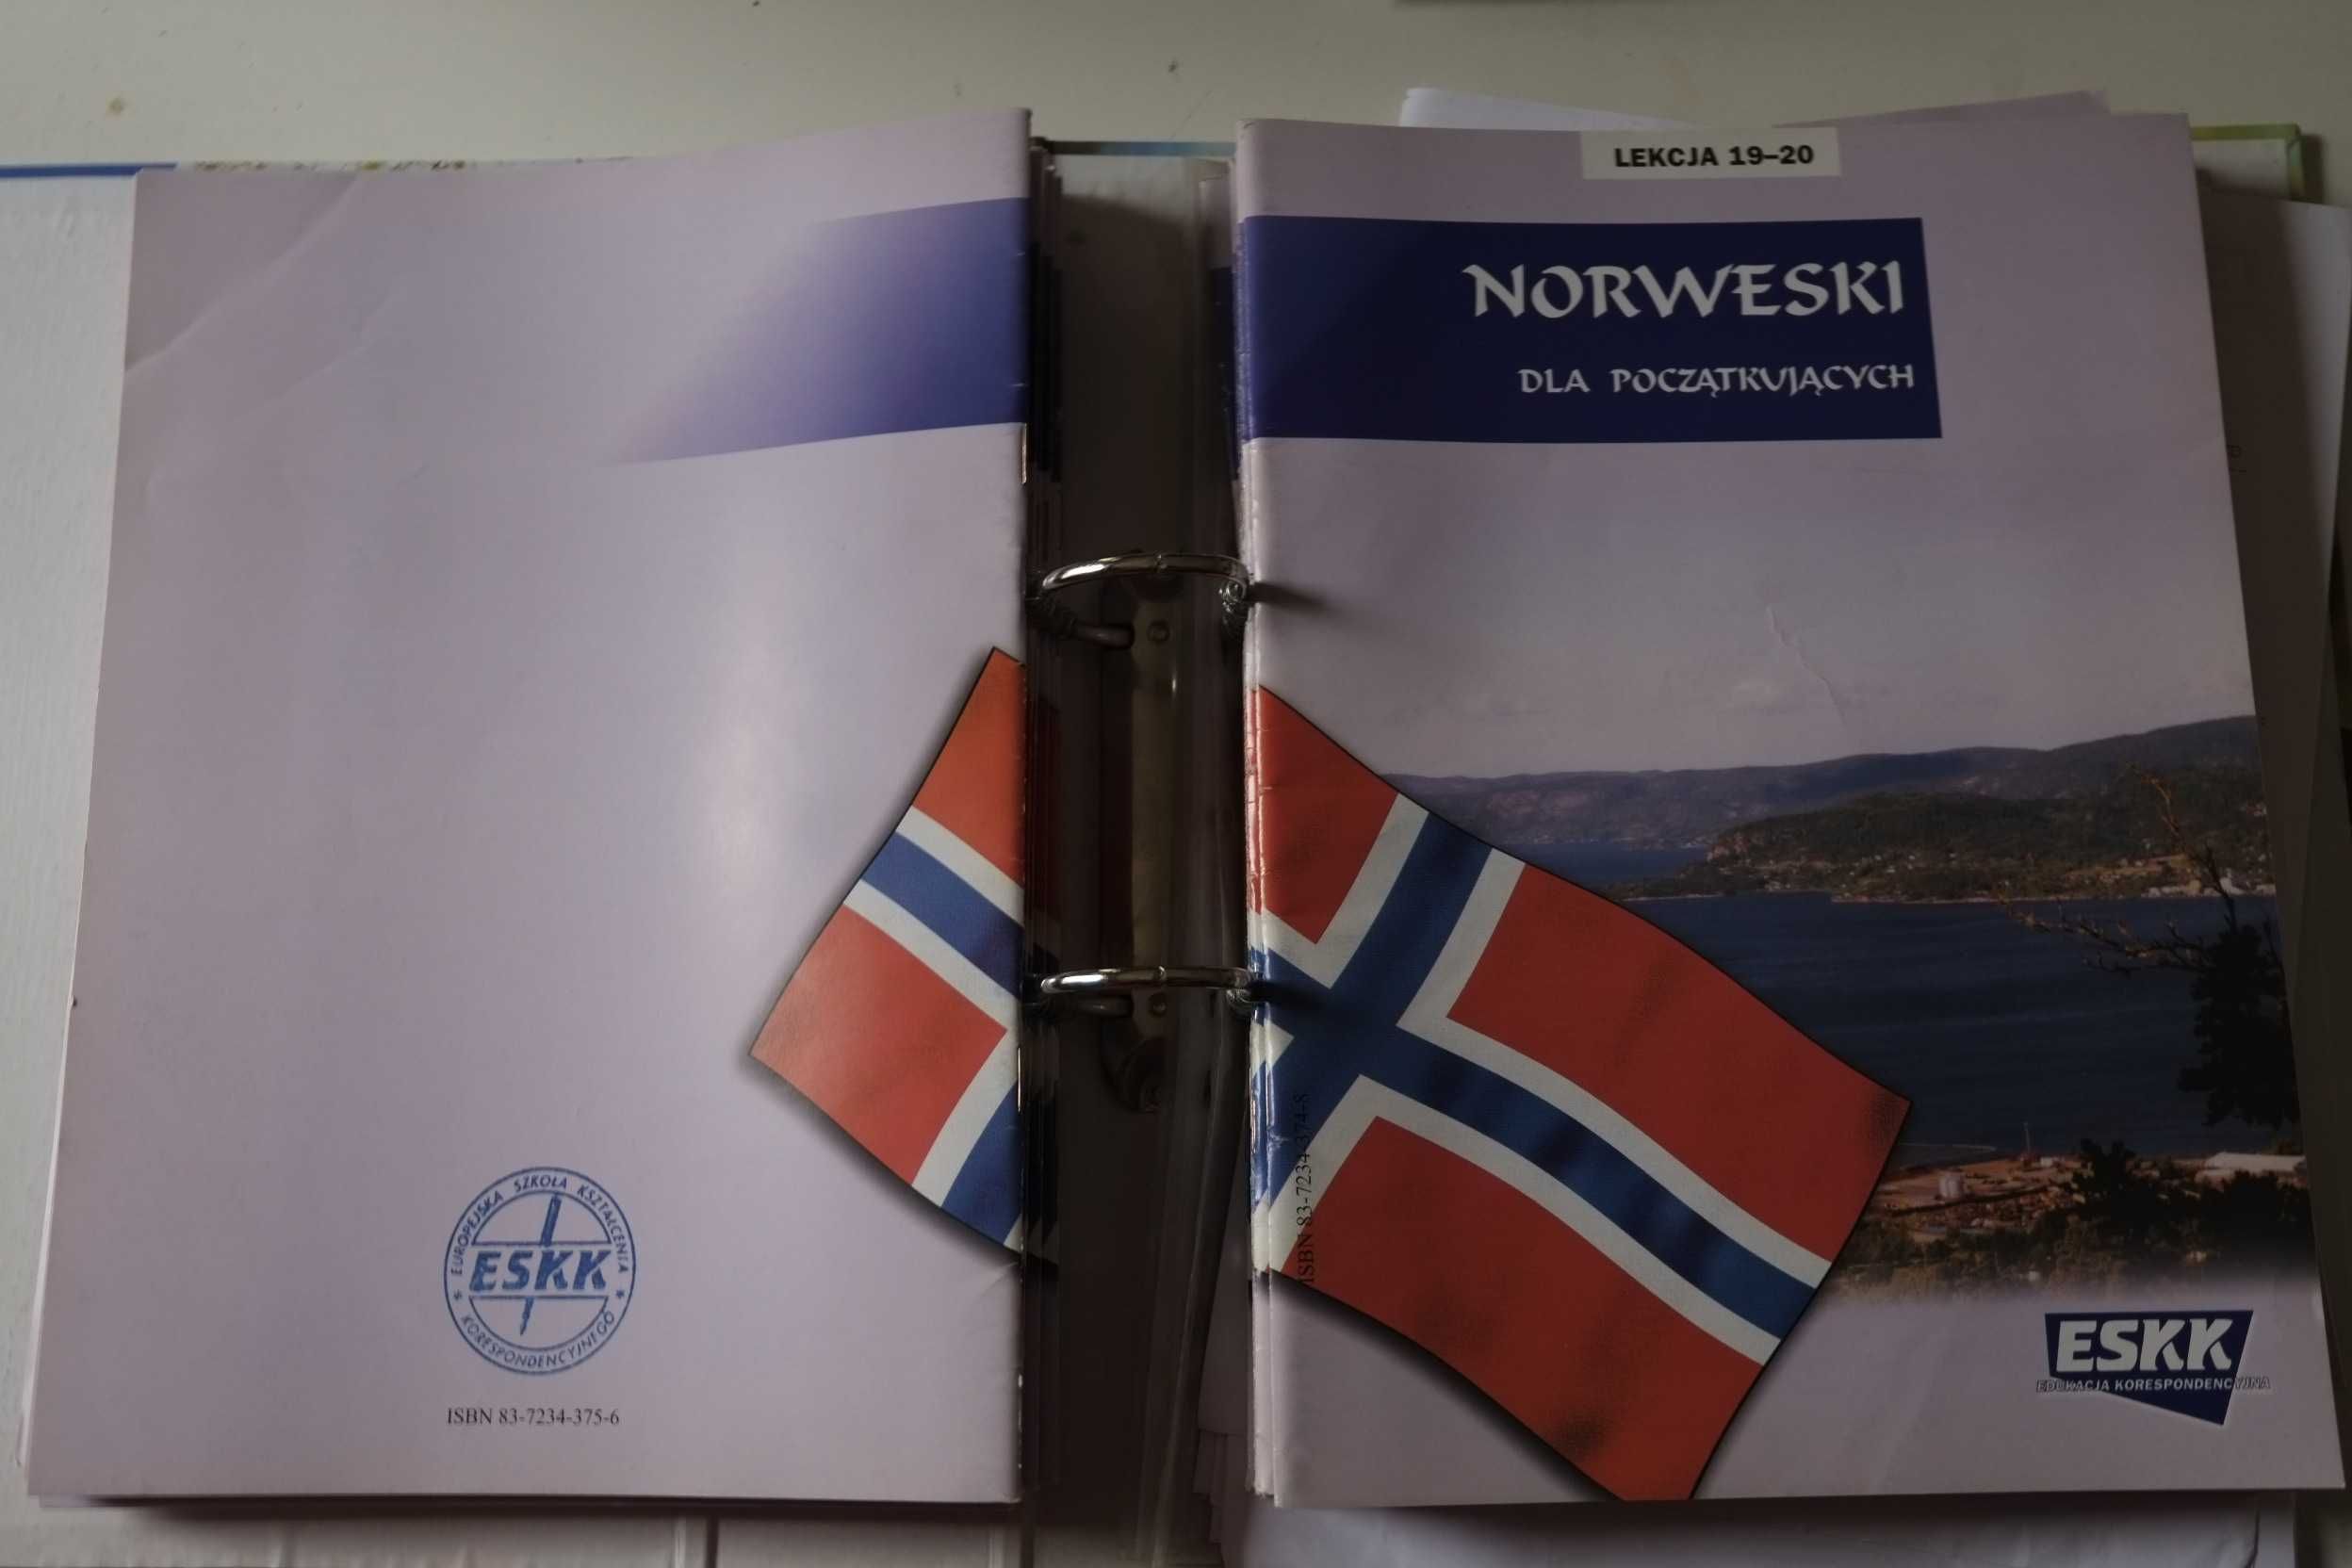 Kurs języka Norweskiego - Komplet. Norweski, dla początkujących.  ESKK